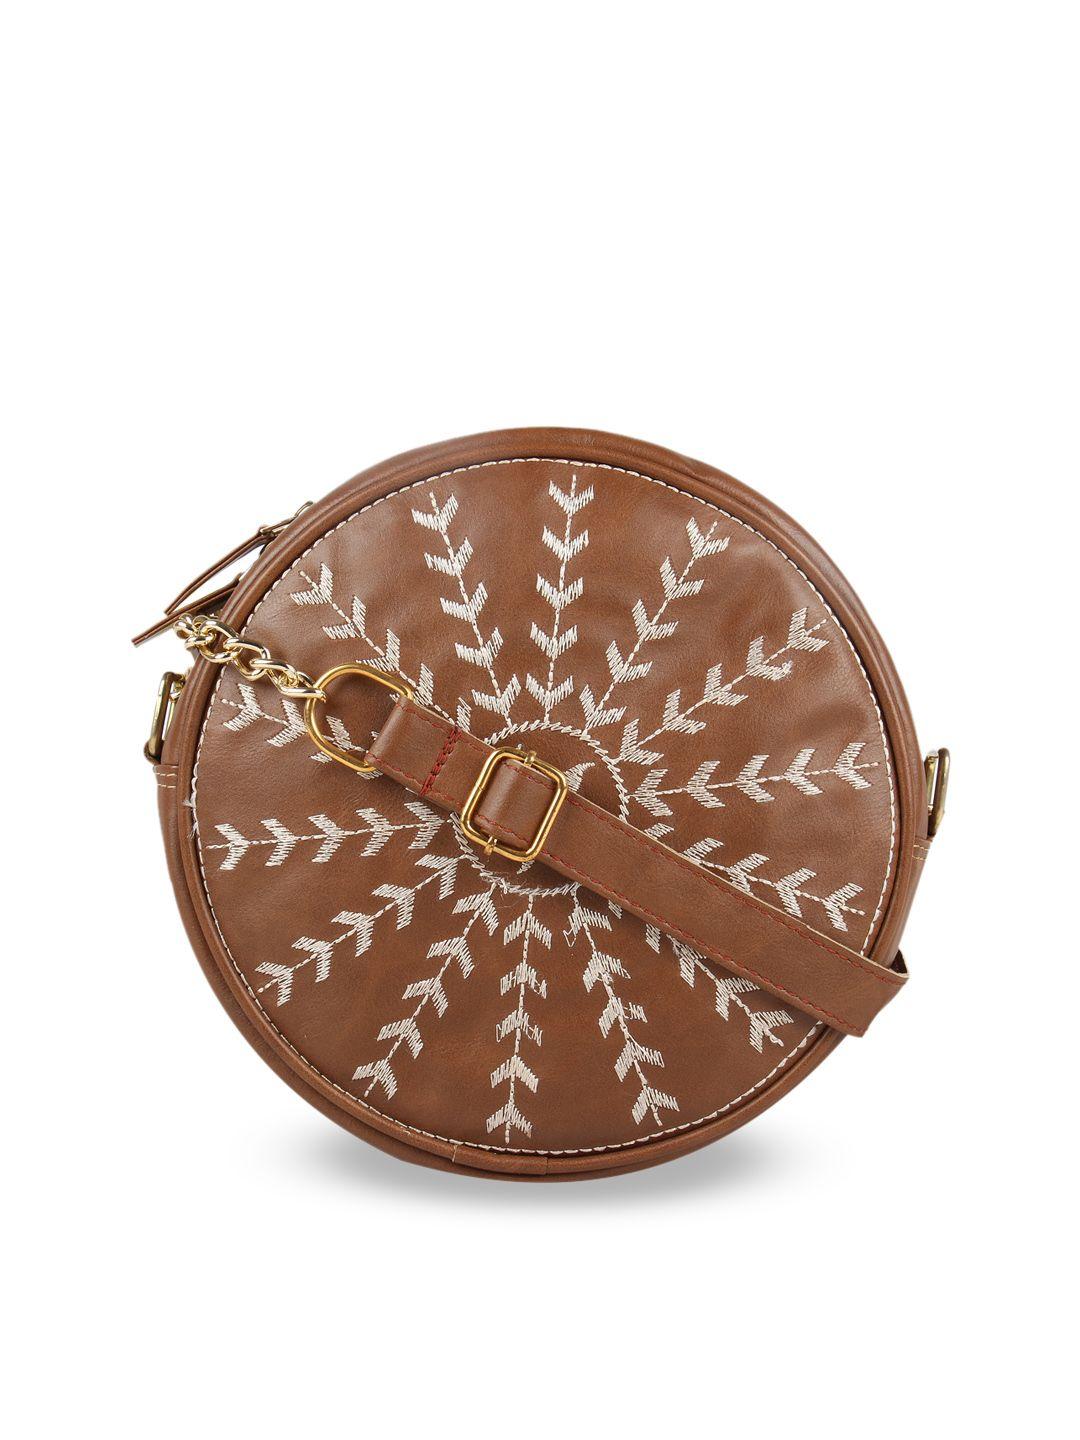 vivinkaa camel brown embellished sling bag